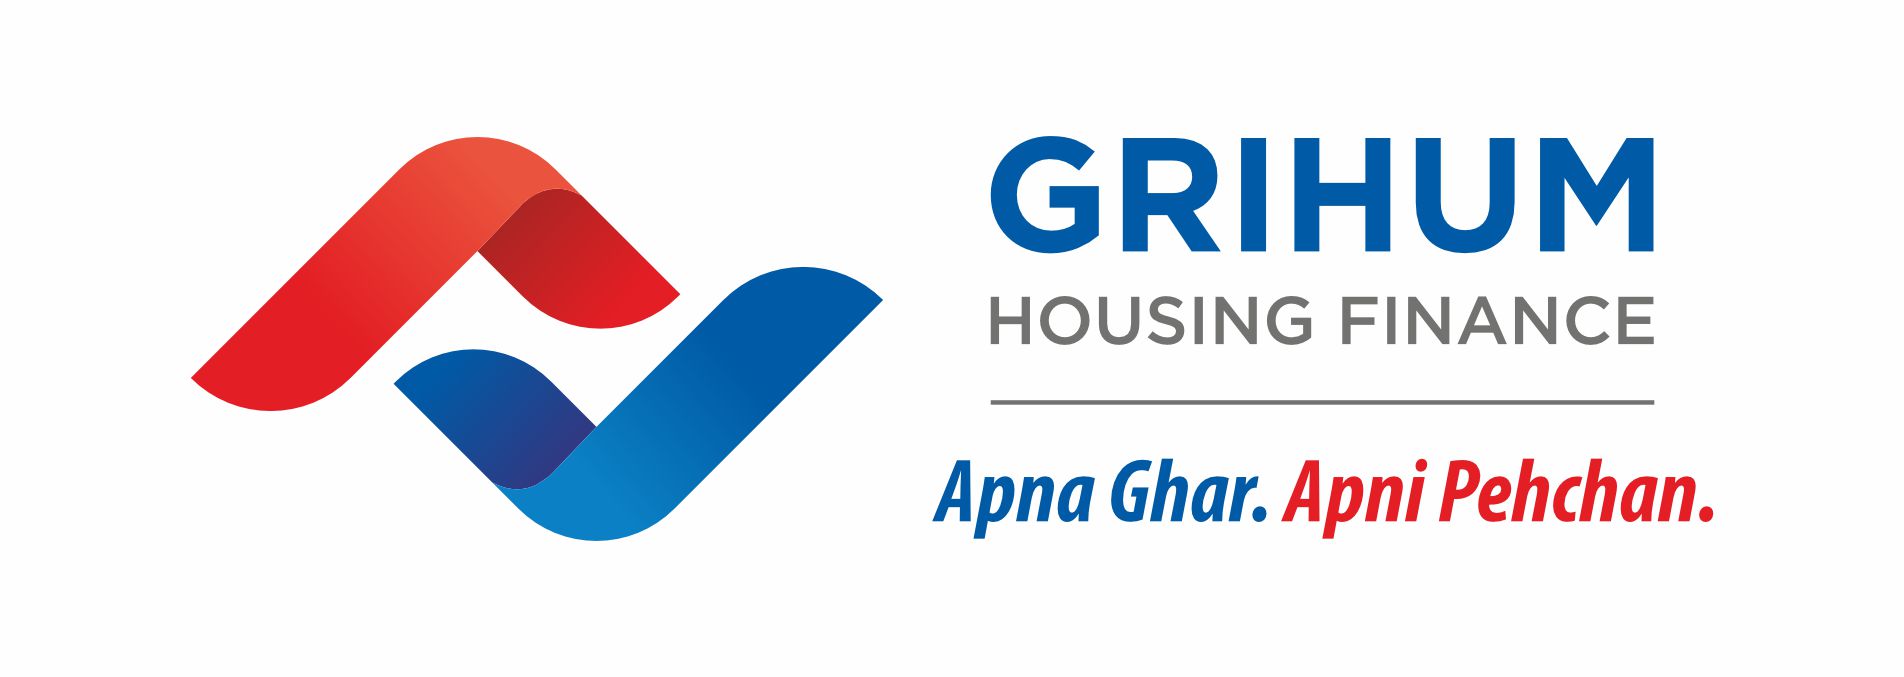 Grihum Housing Finance Limited